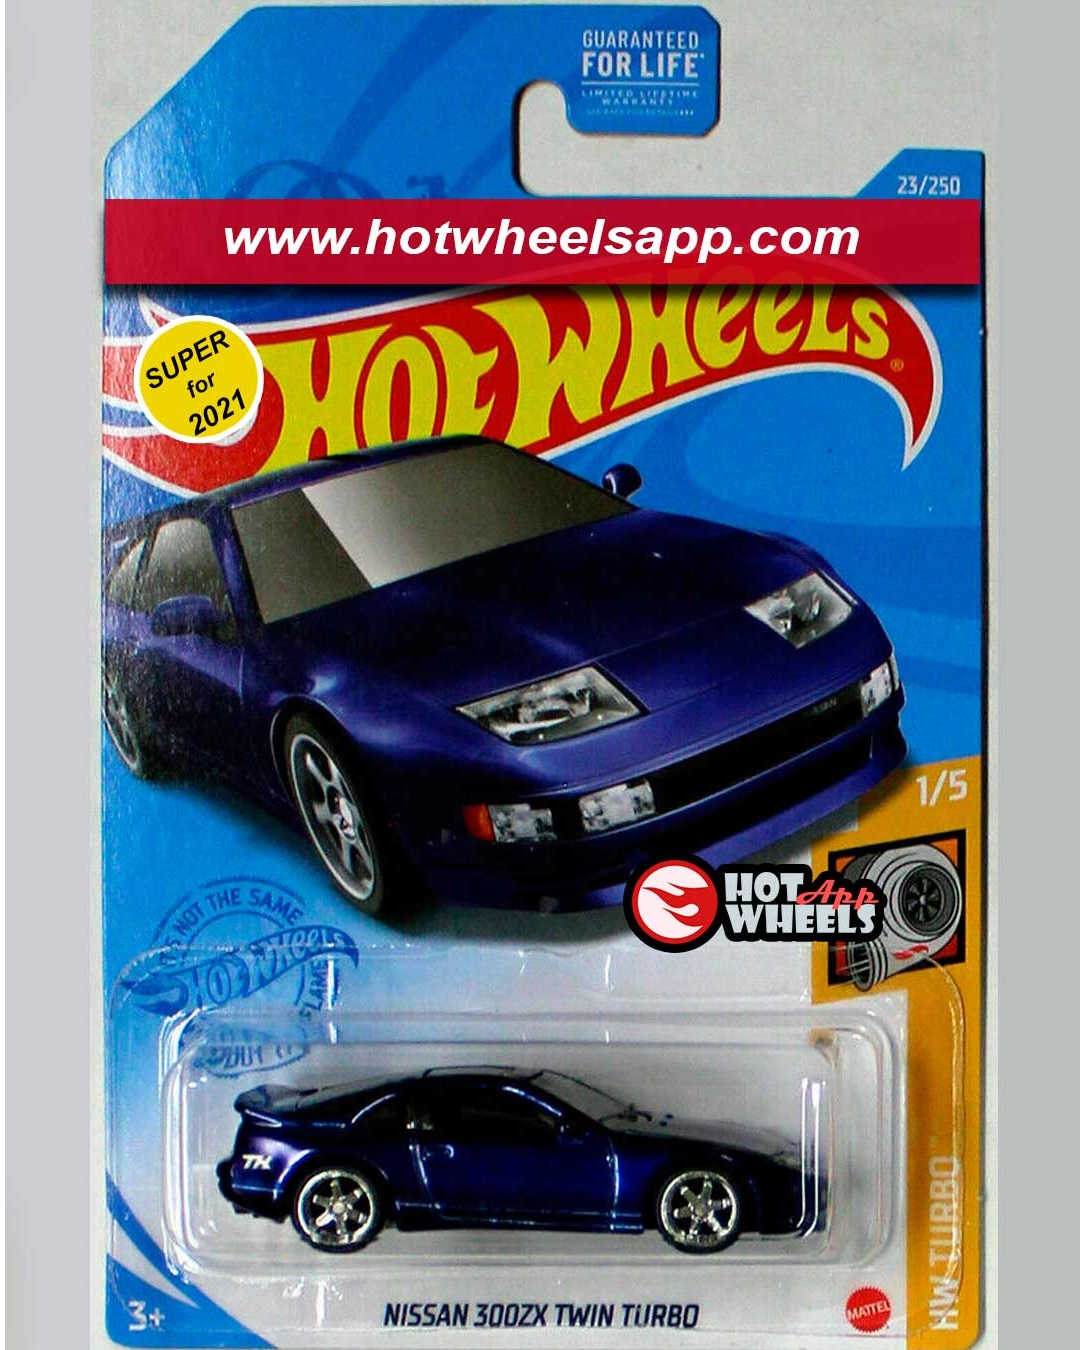 Hot Wheels 2020 HW Turbo 1/5 Blue Nissan 300ZX Twin Turbo 